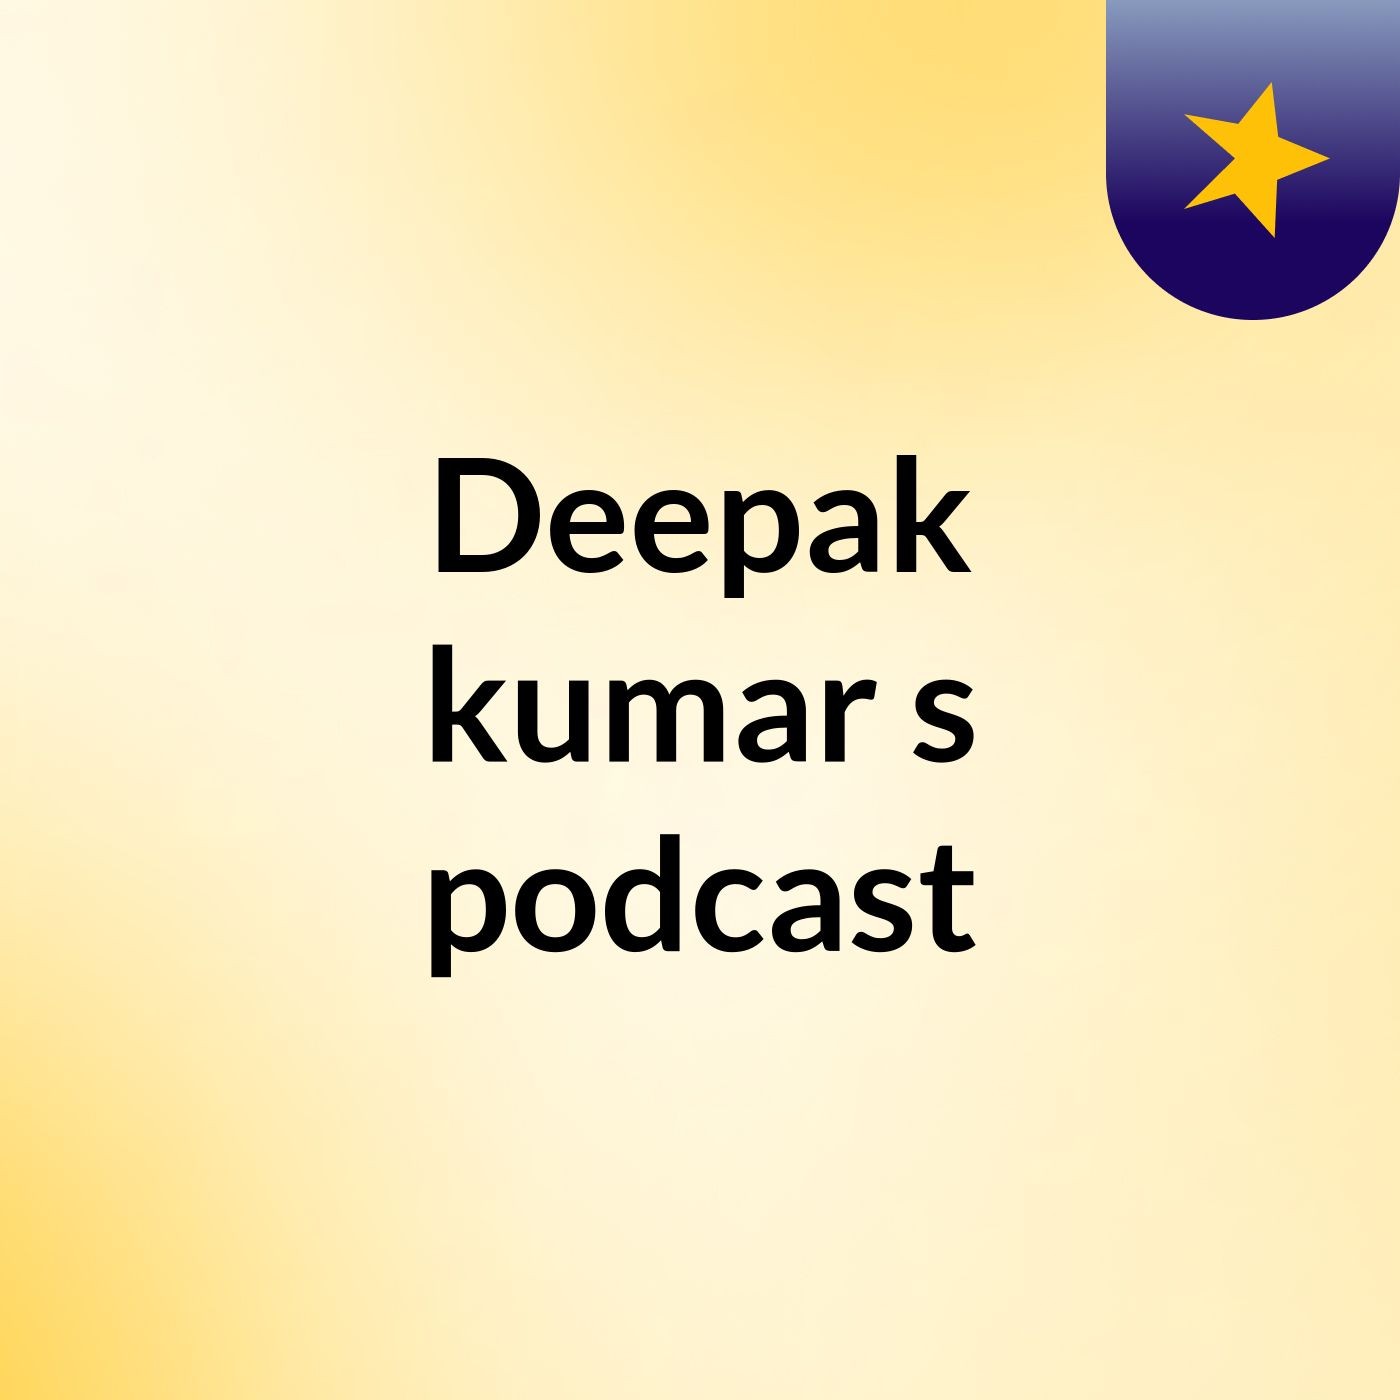 Episode 3 - Deepak kumar's podcast